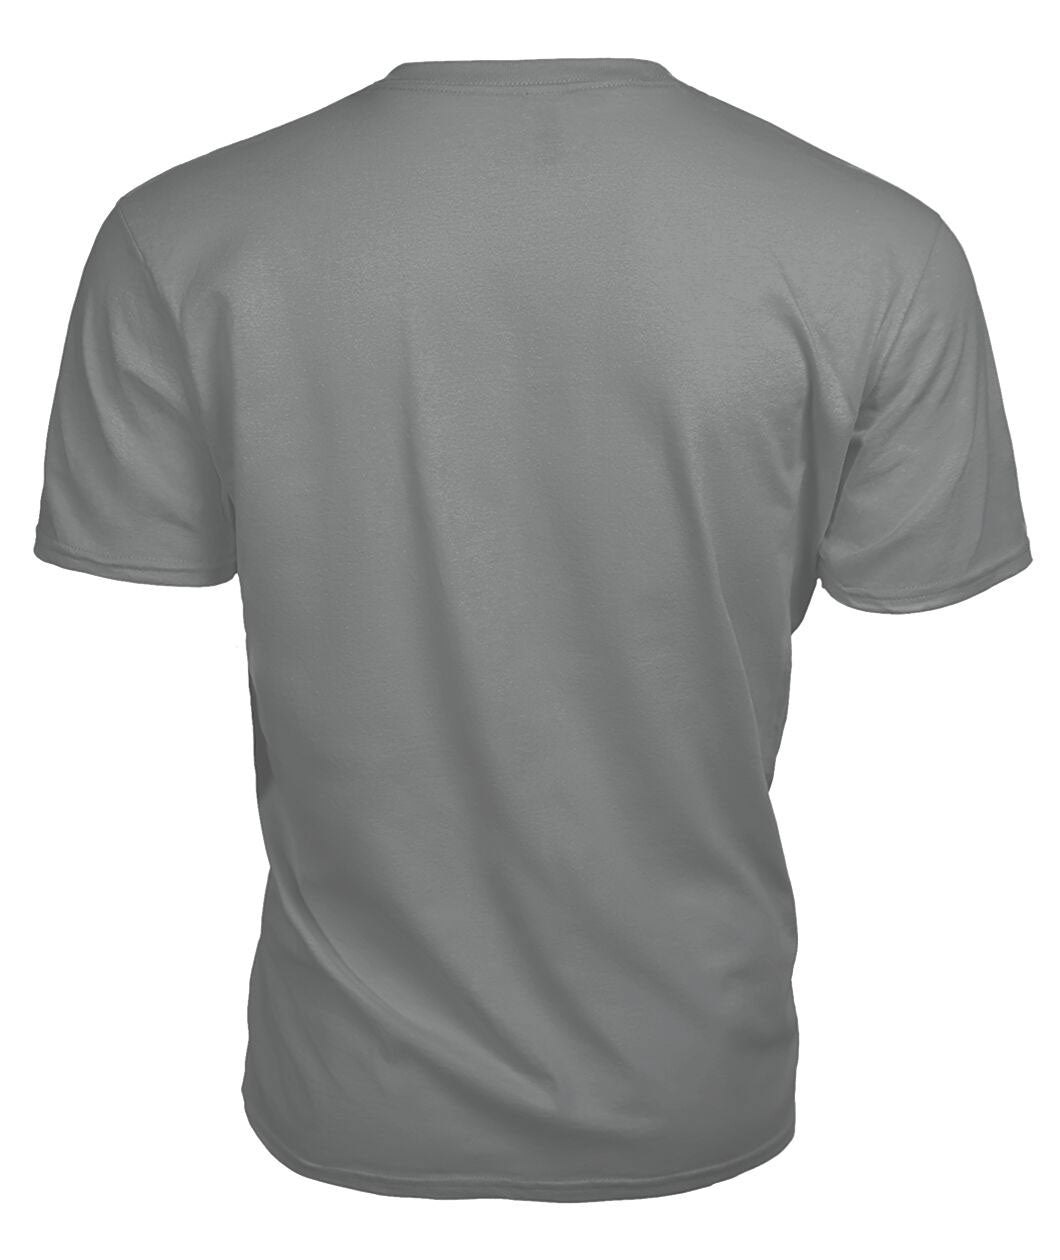 Scott Green Modern Tartan Crest 2D T-shirt - Blood Runs Through My Veins Style